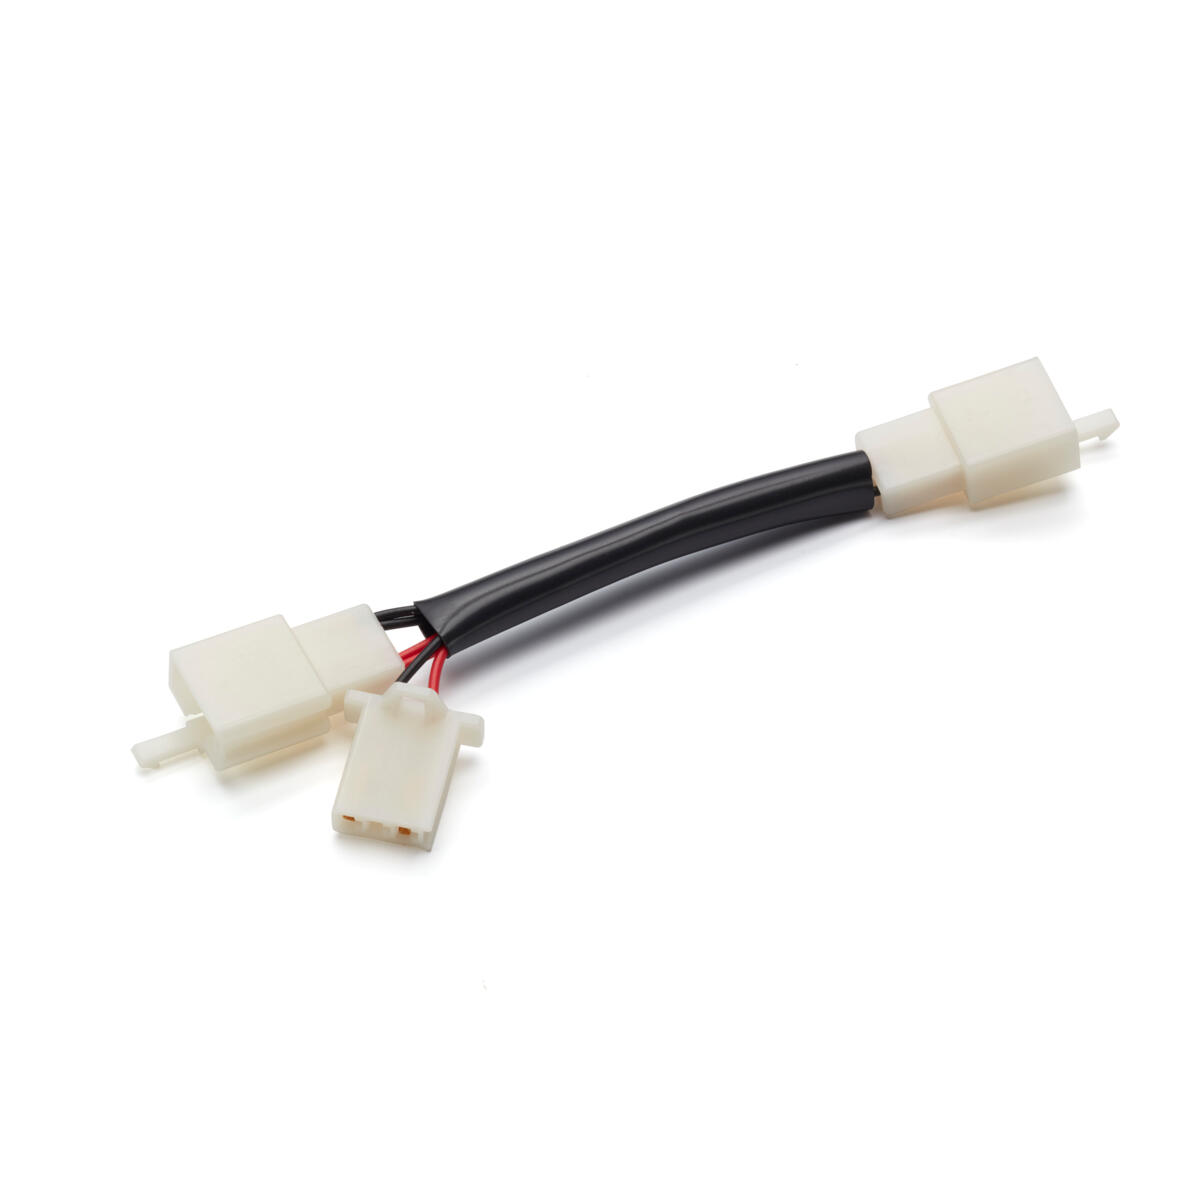 Cablu conector pentru a cupla uşor convertorul USB opţional la unitatea dvs.